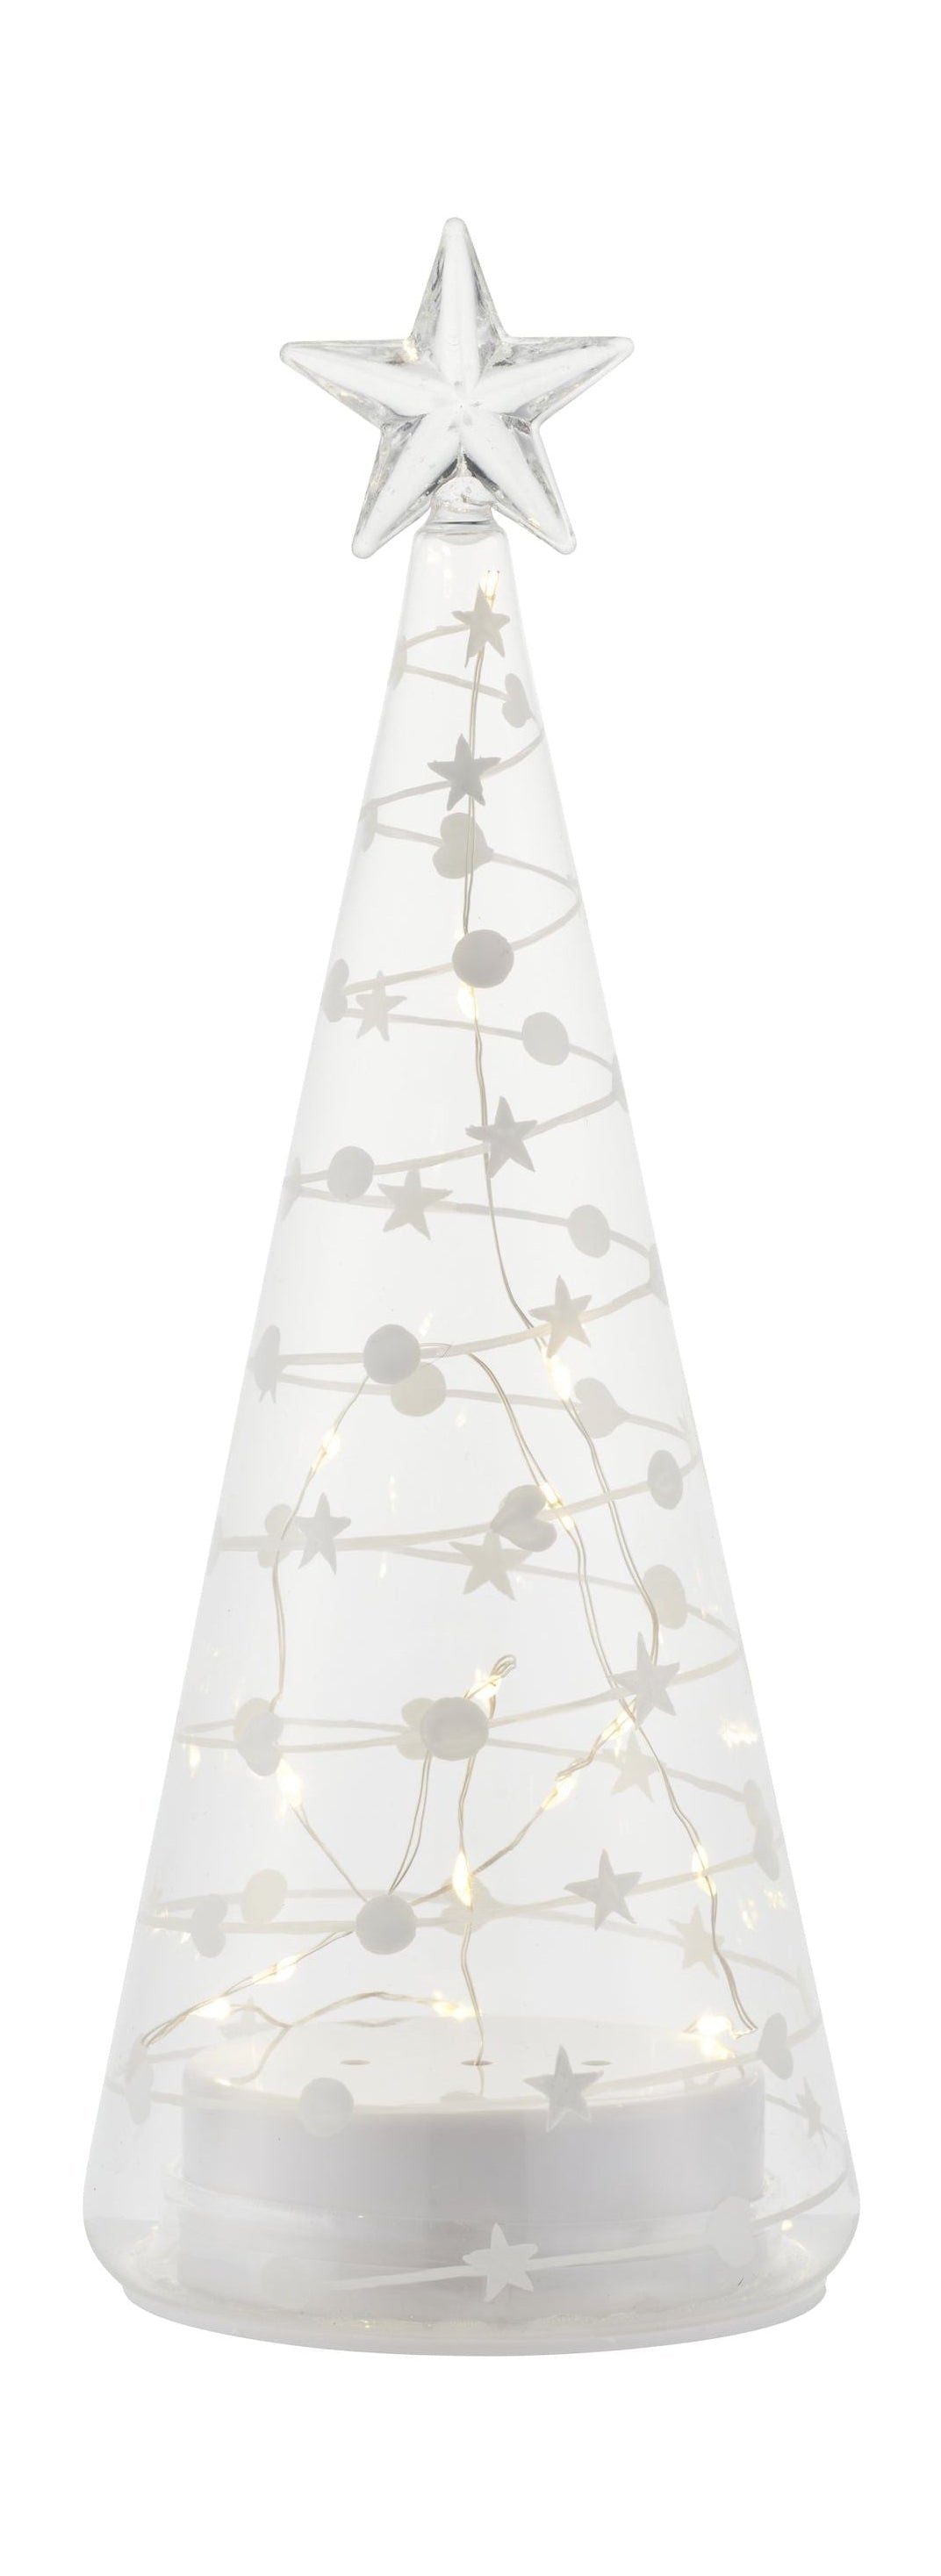 Sirius Sweet Christmas Tree, H26 cm, wit/helder